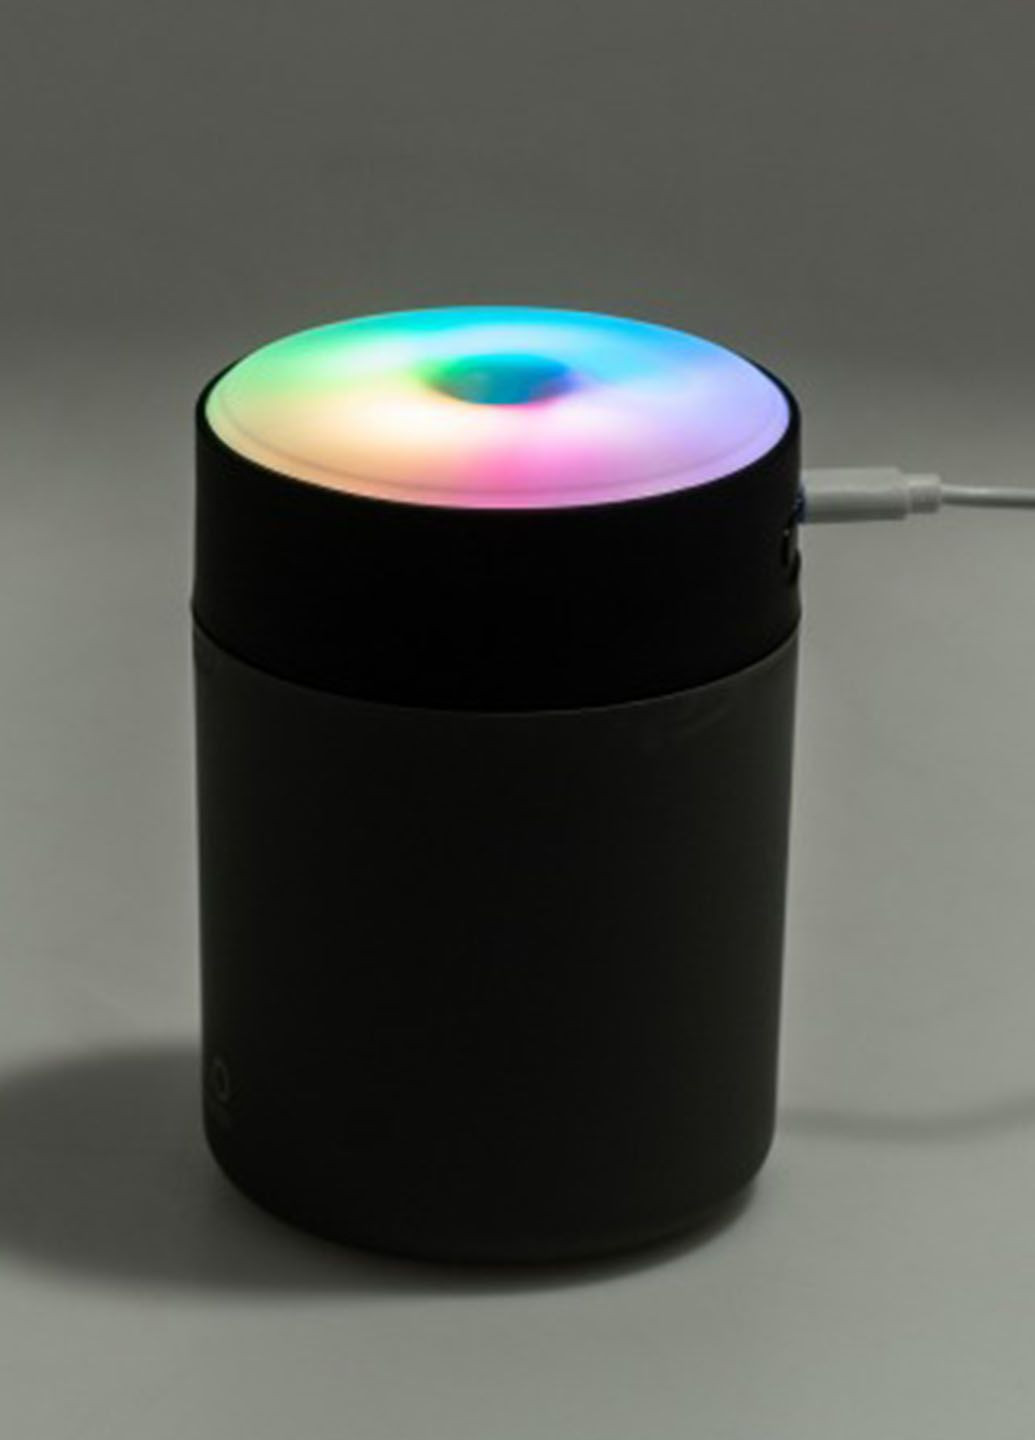 Зволожувач повітря ультразвуковий UKC аромадифузор з RGB дсвічуванням 300 мл Humidifier h2o (290416627)